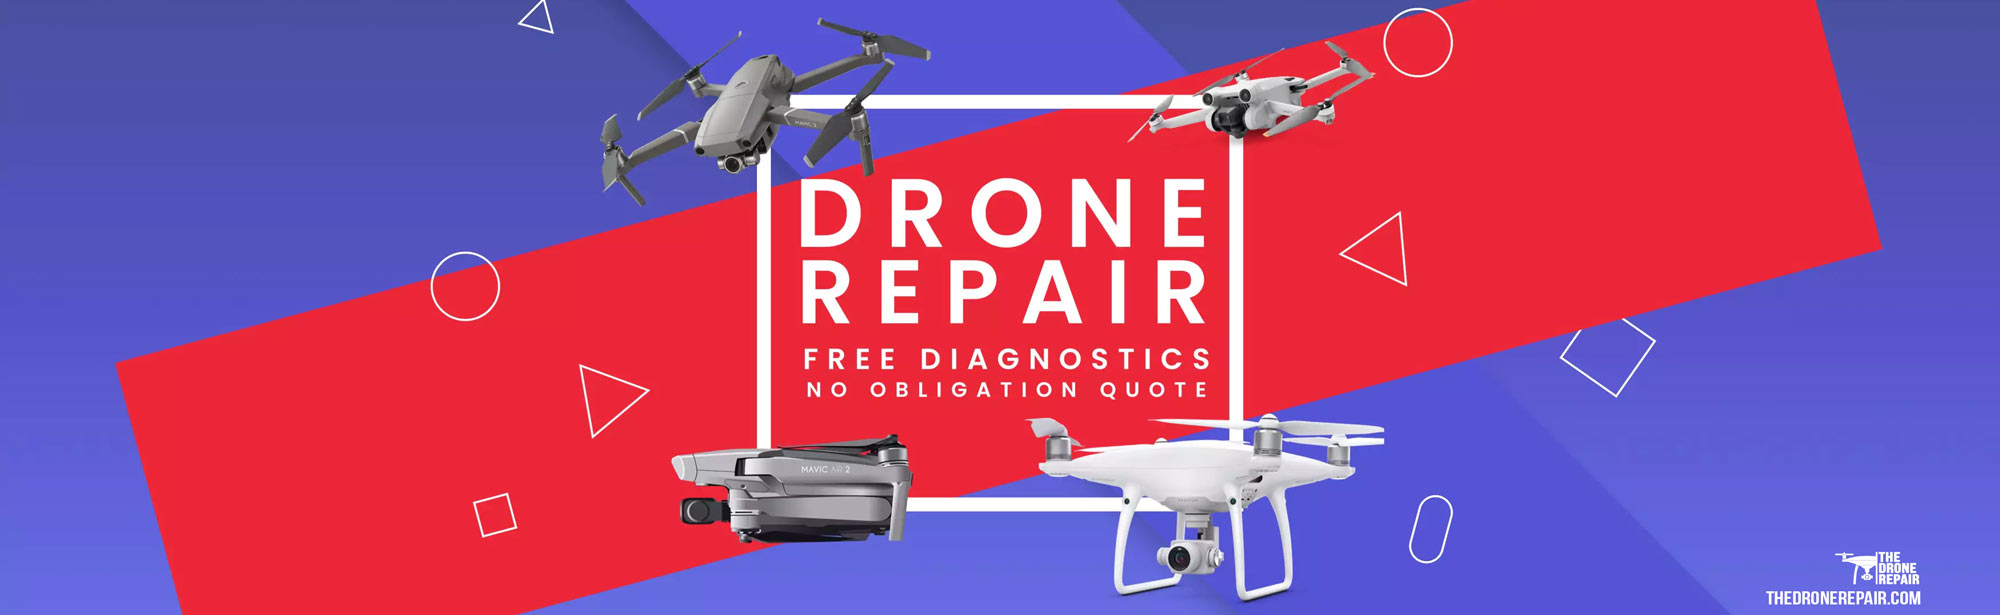 the drone repair